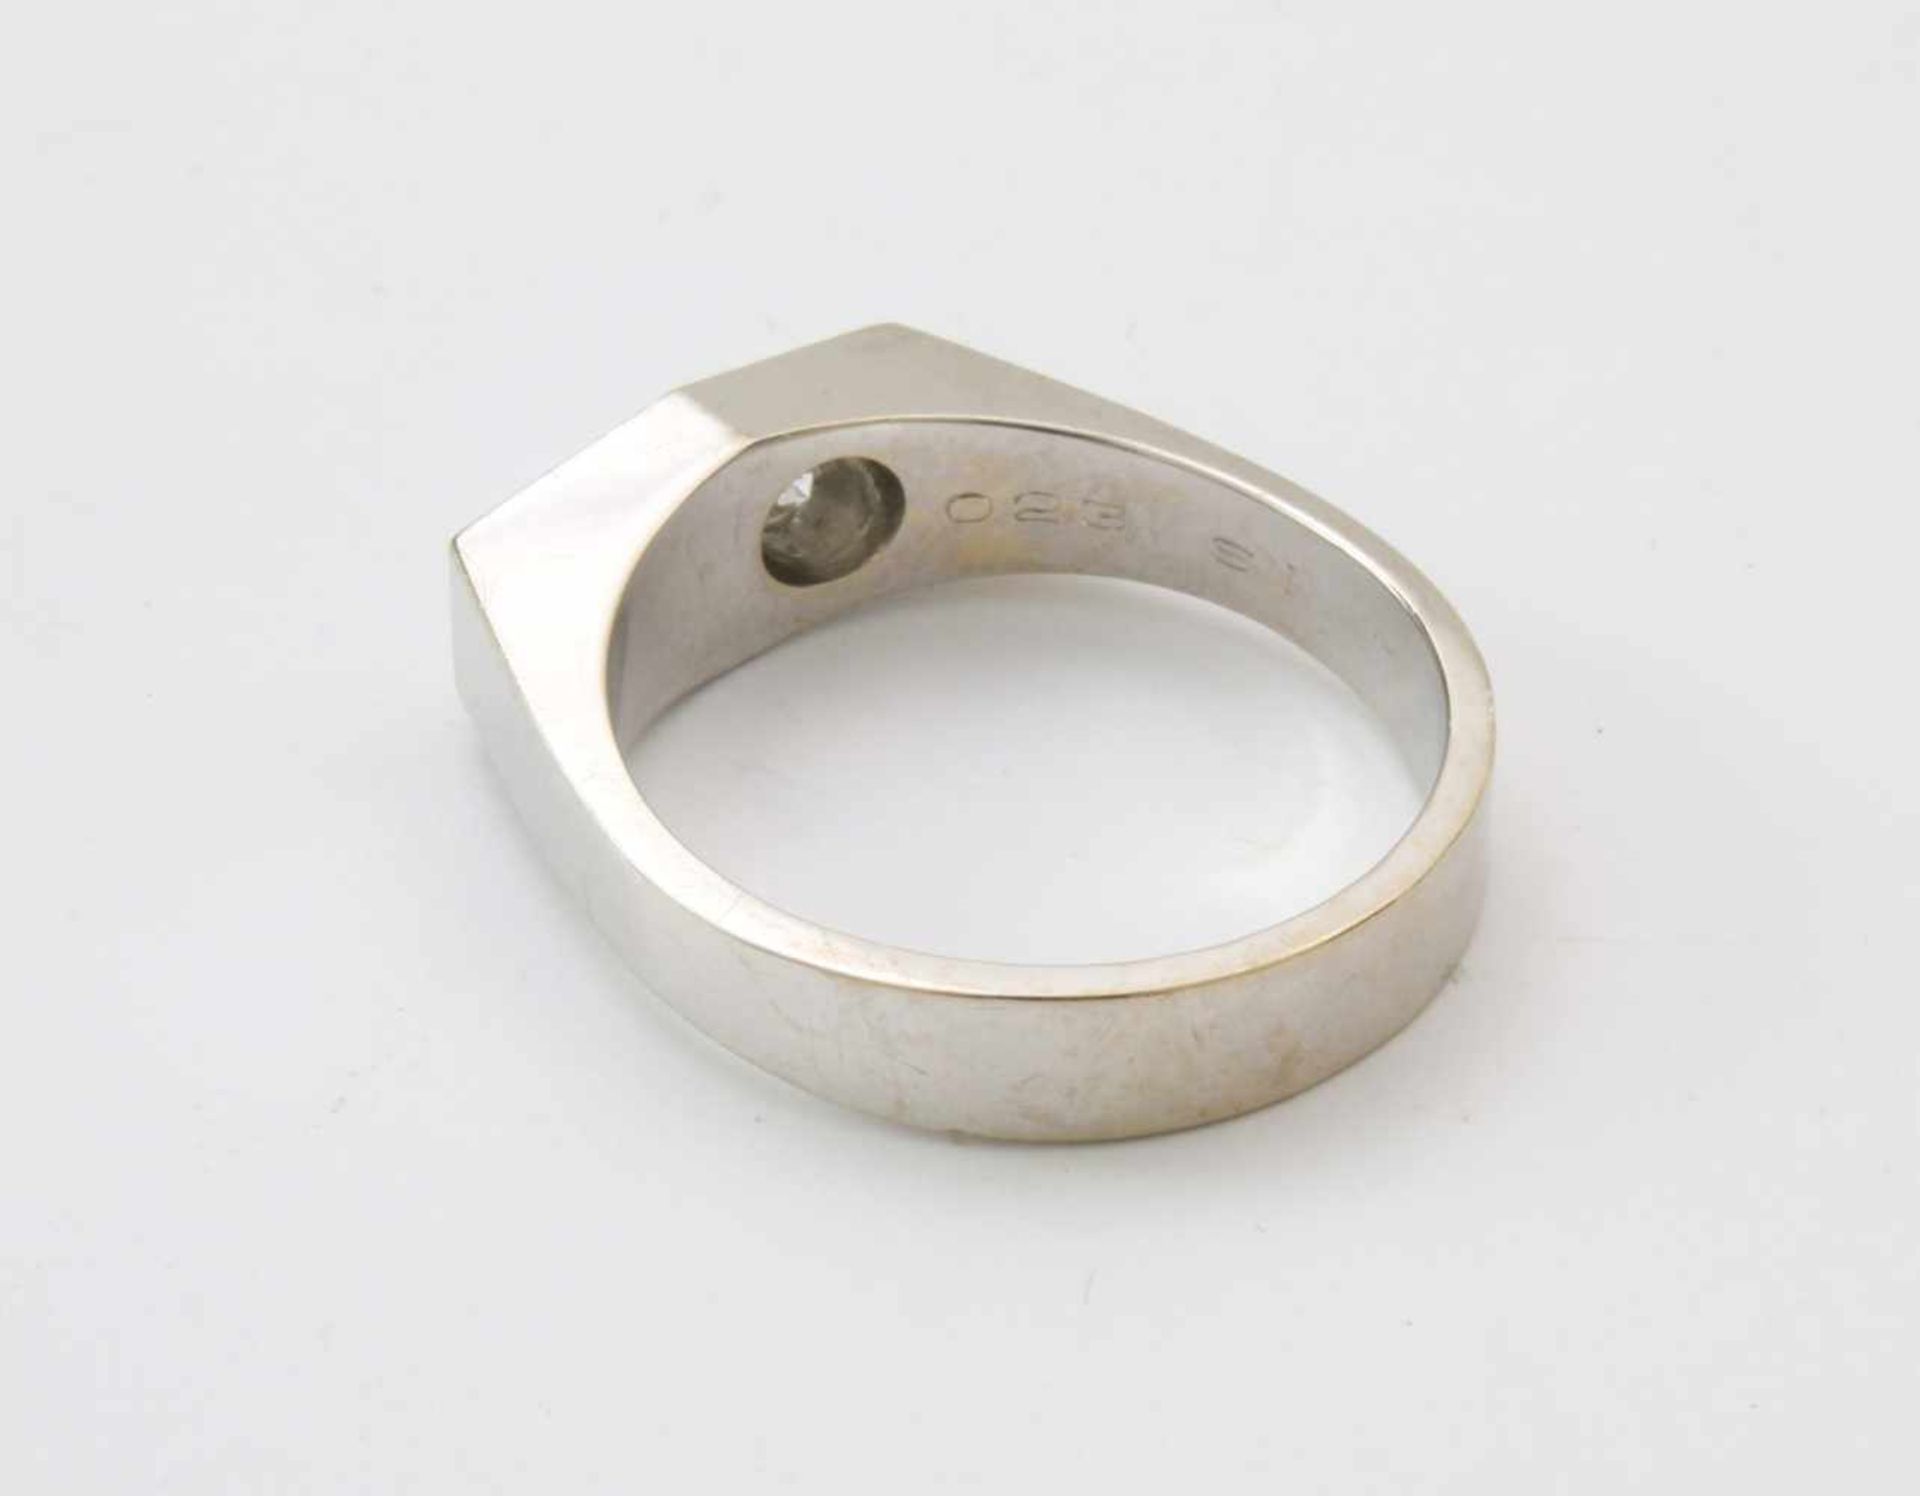 Weißgold-Ring mit Brillant SolitärWG 585, Brillant 0,23 ct., gute Qualität, tw/si, Ringgröße: 60, - Bild 4 aus 4